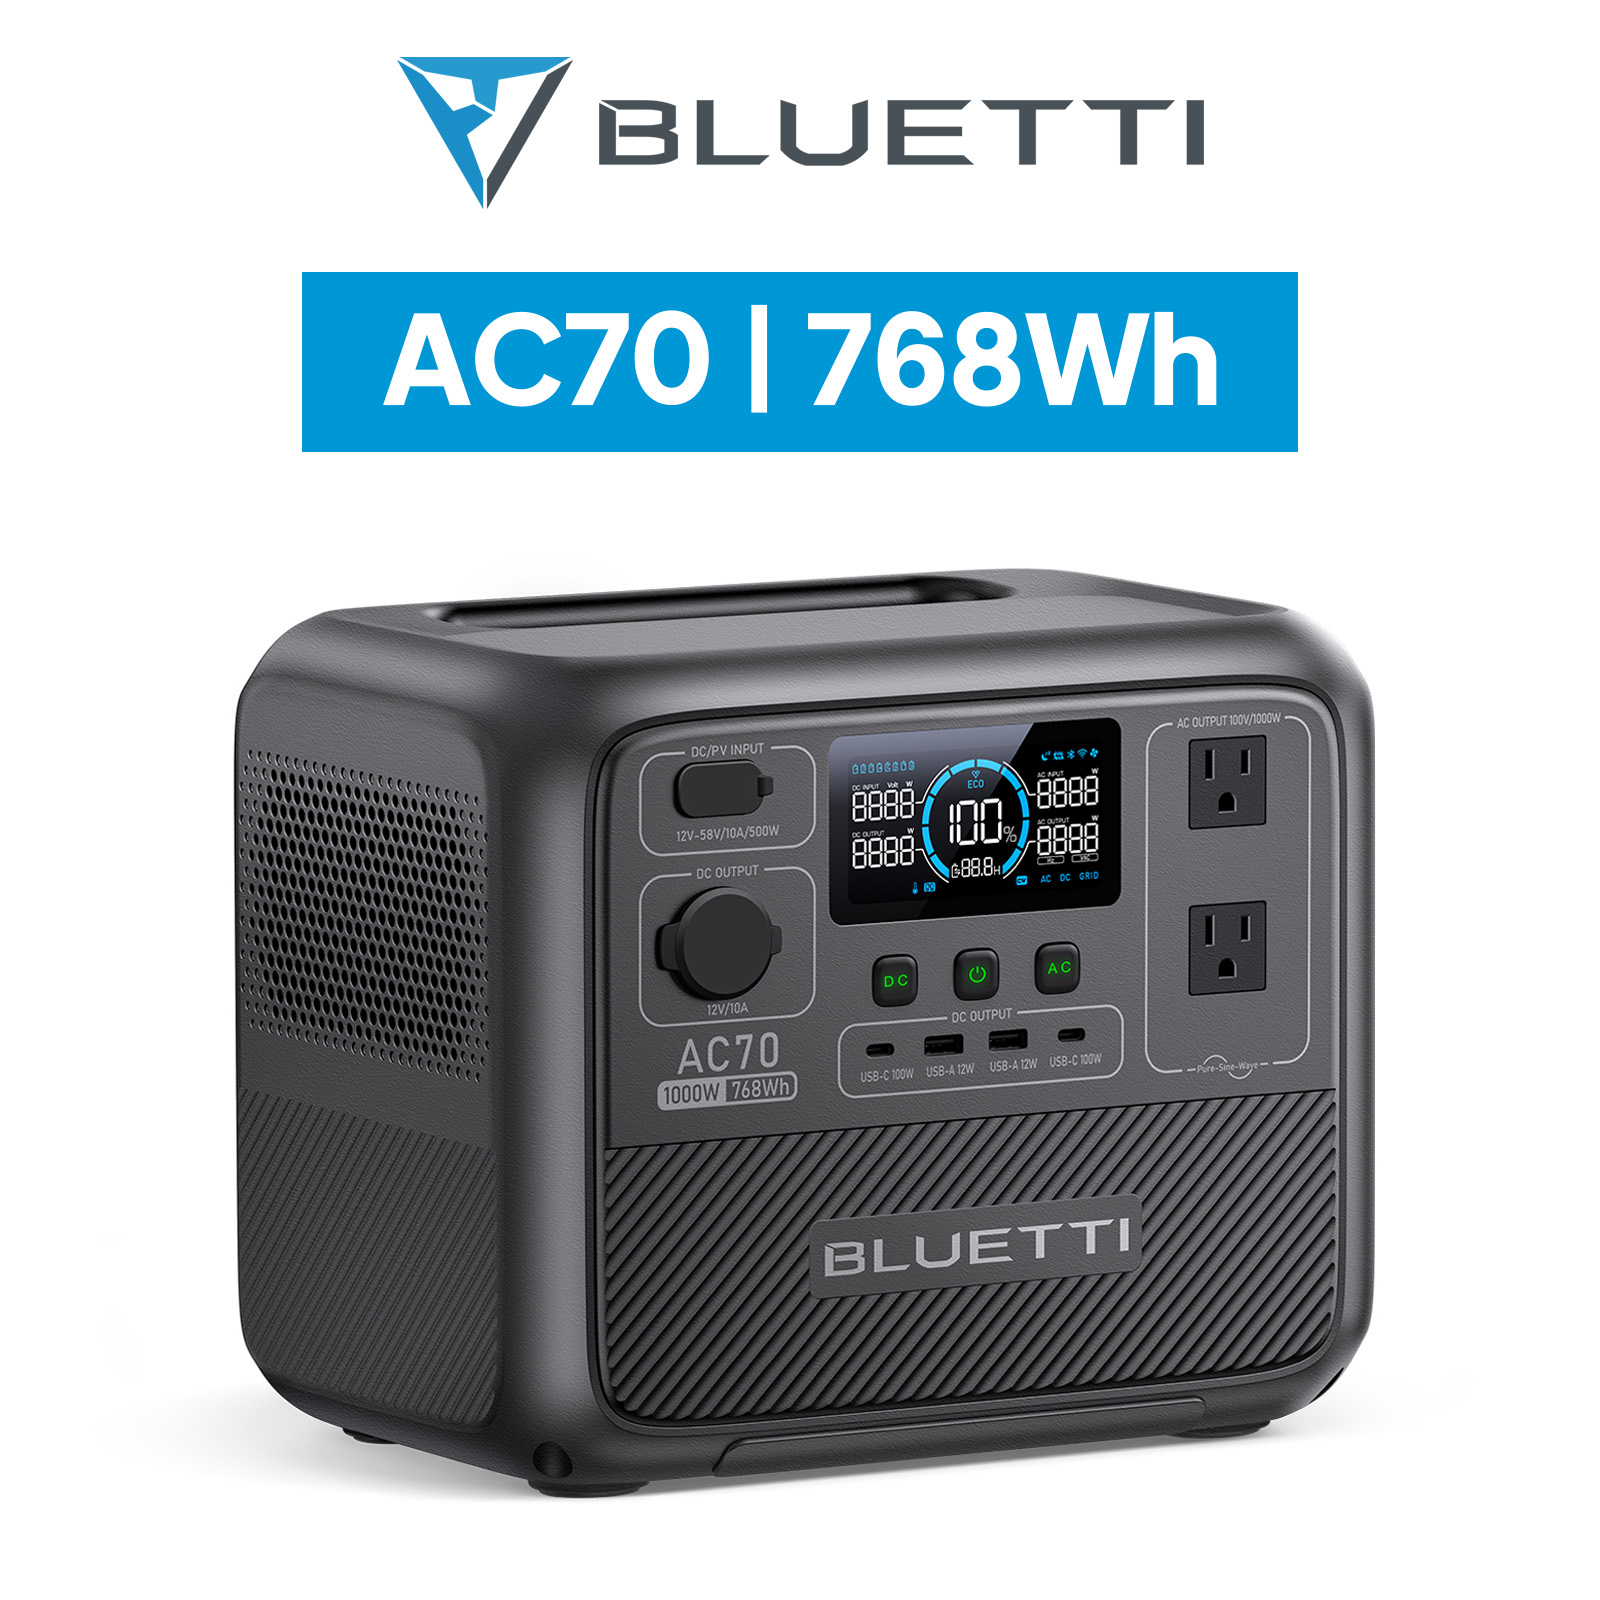 BLUETTI ポータブル電源 AC70 768Wh/1000W 大容量 家庭用 蓄電池 5年 